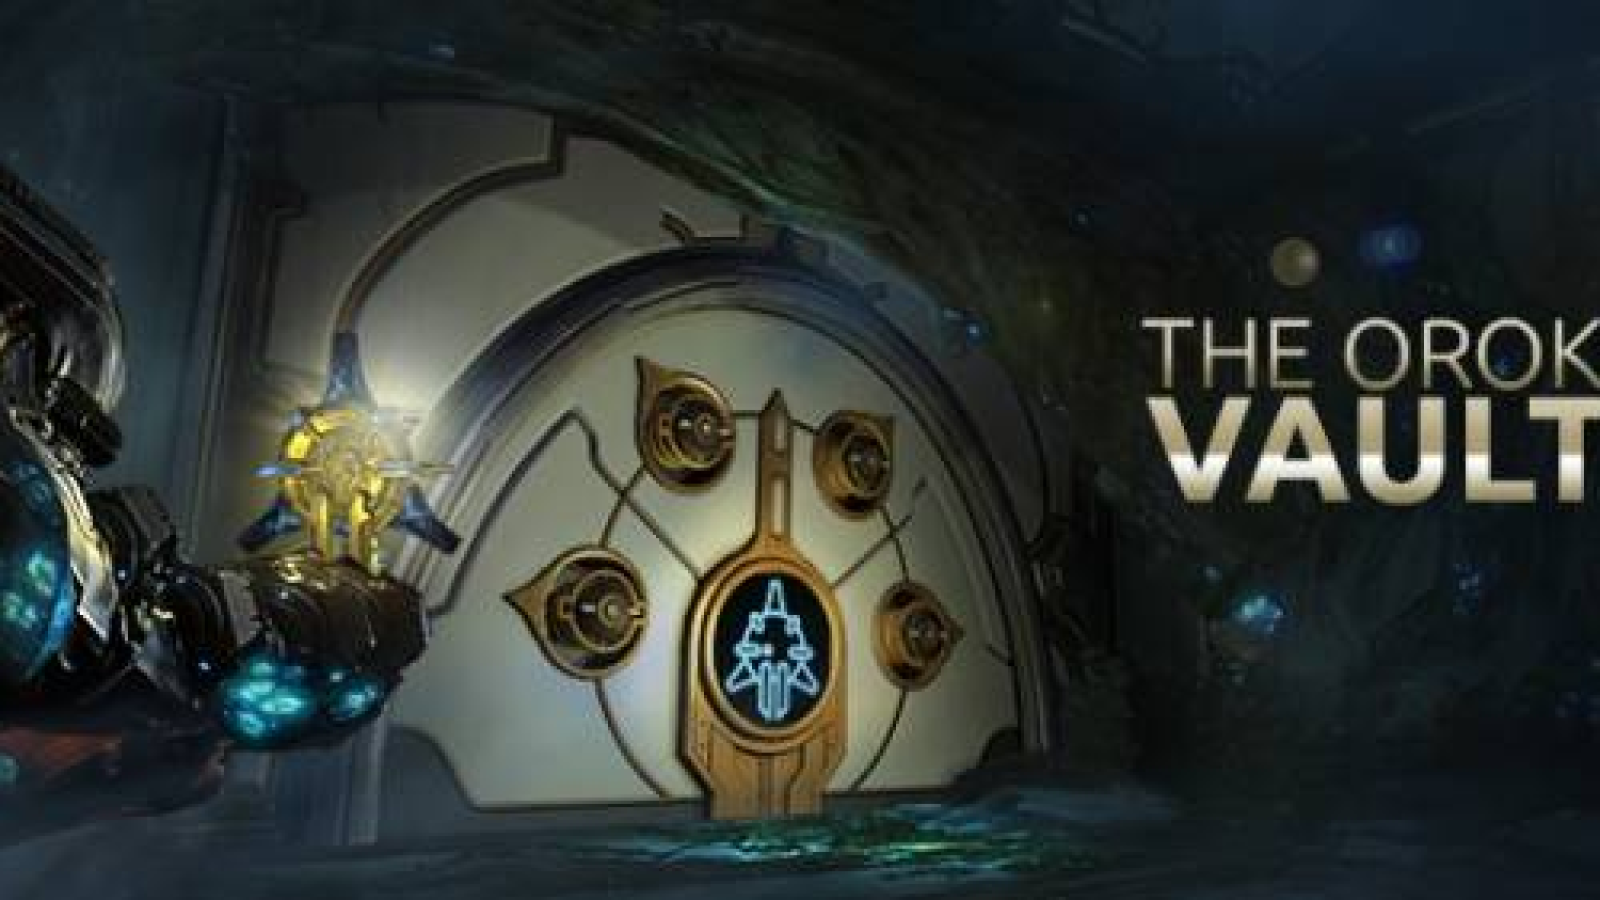 The Orokin Vaults